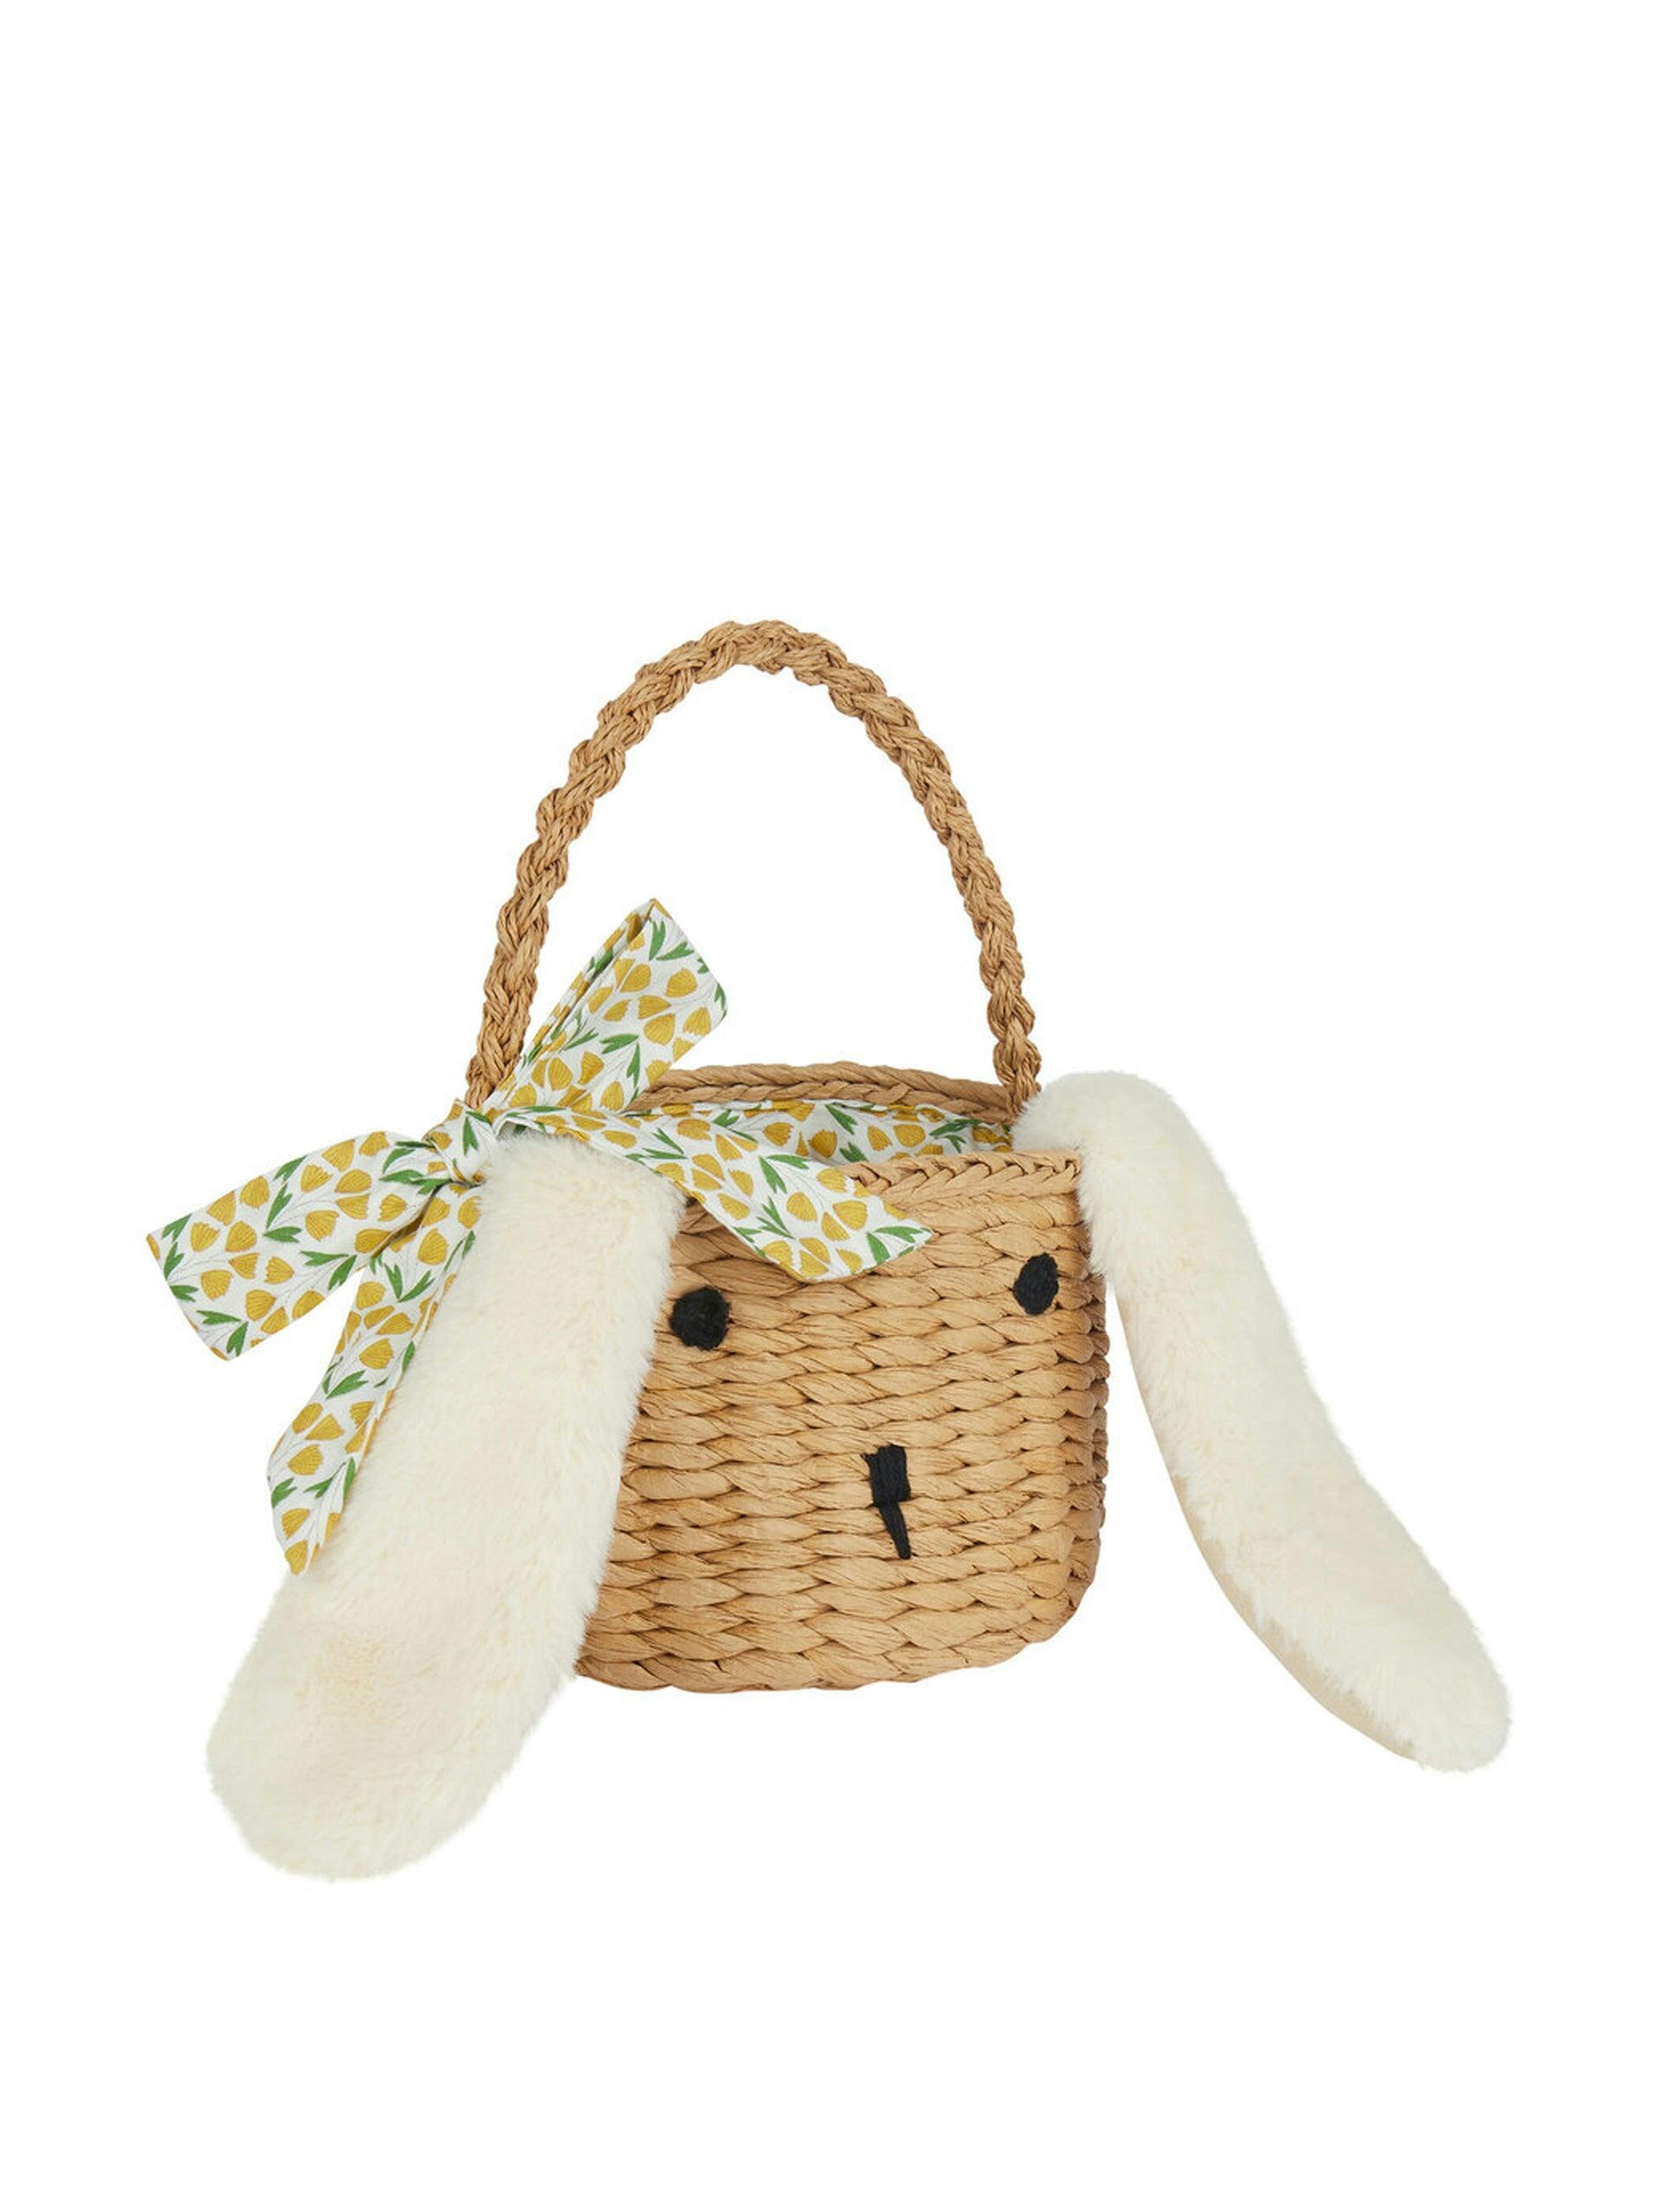 Bunny Easter basket